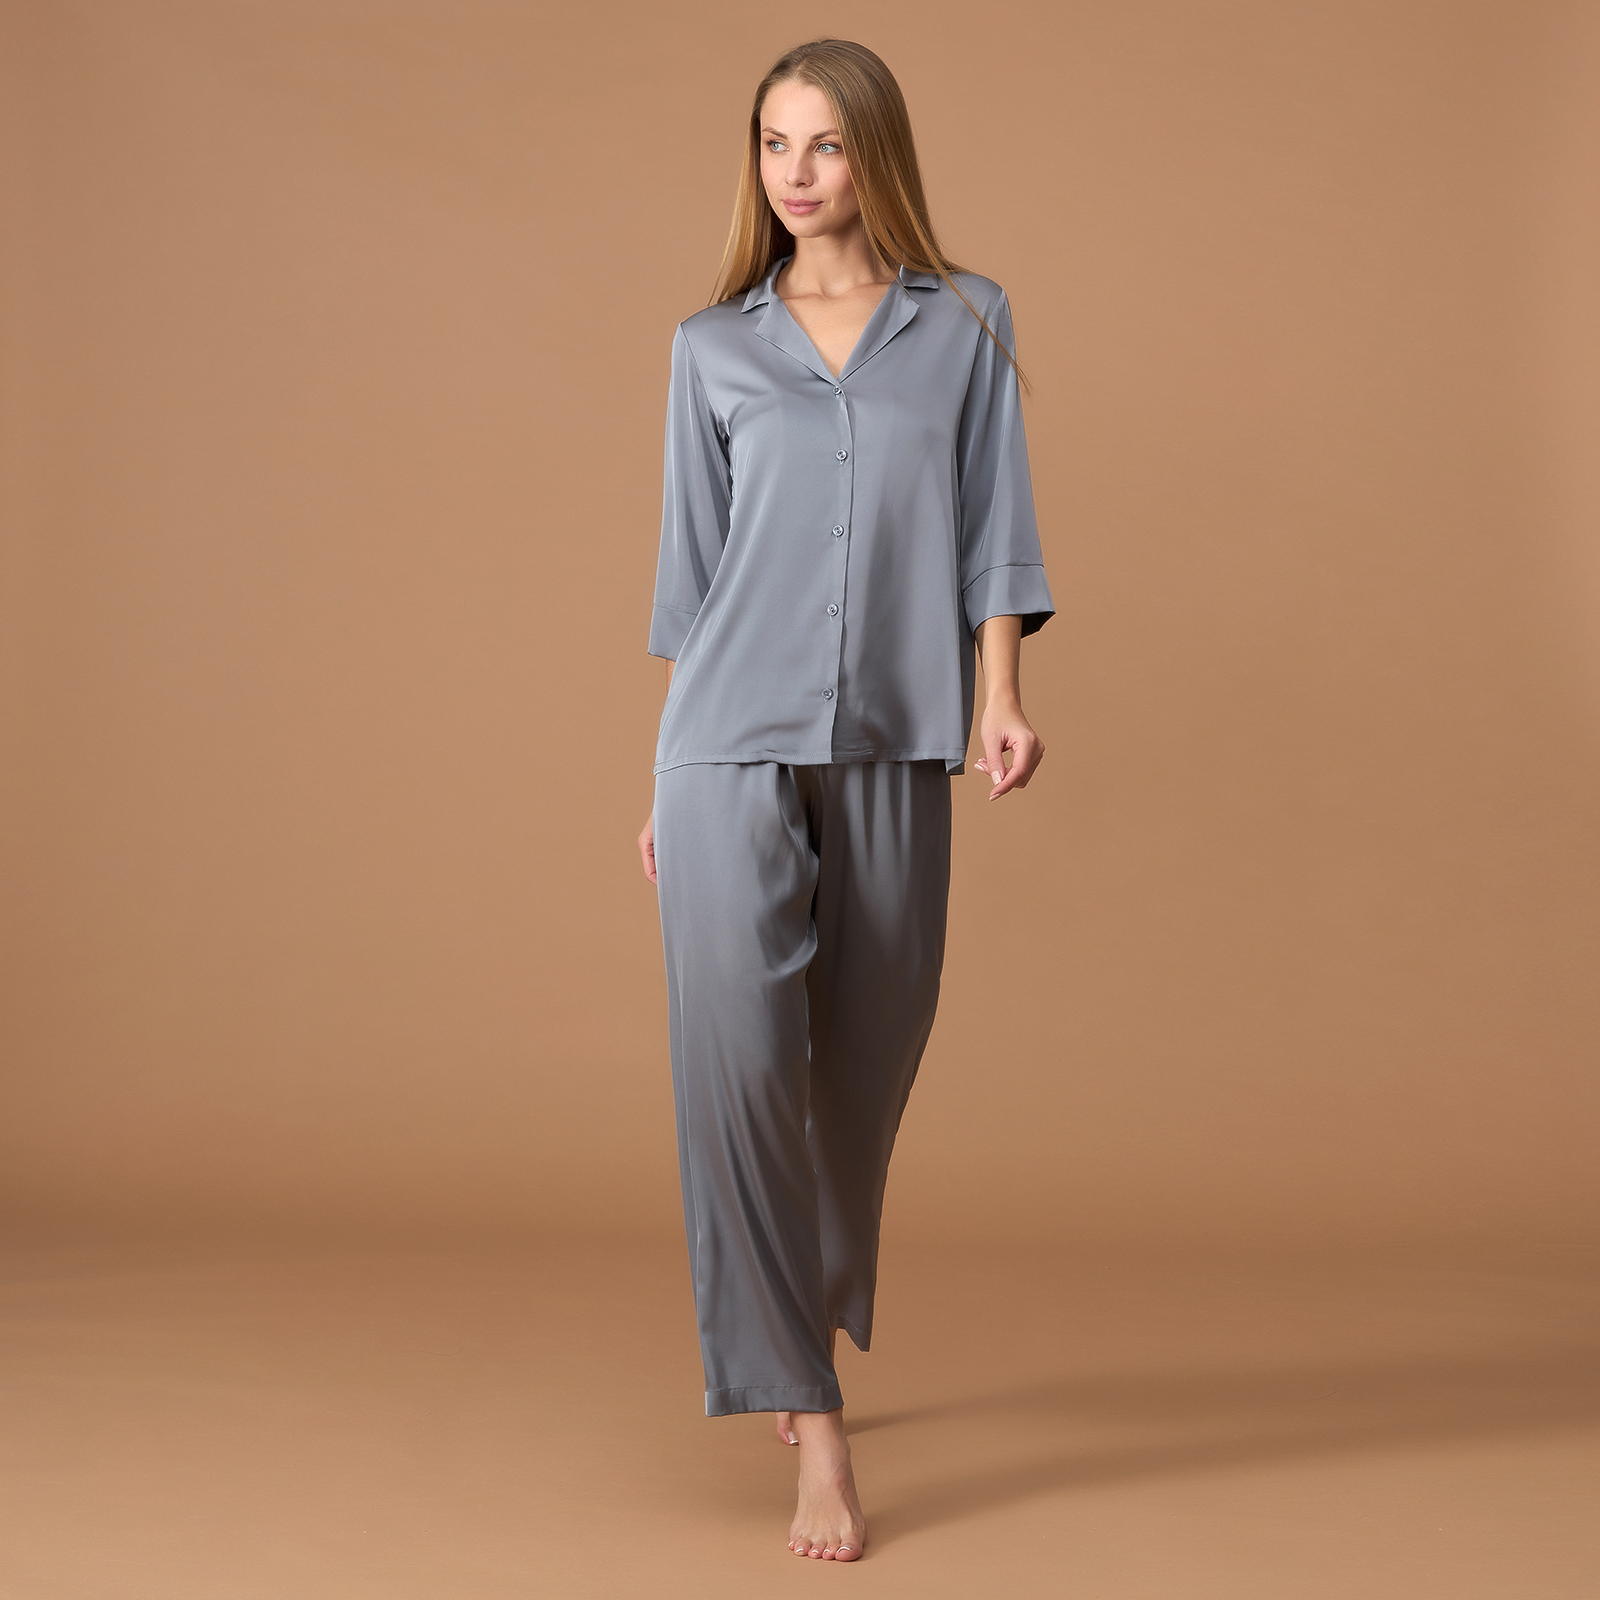 Пижама Alisma, серебро II CozyHome, цвет серый, размер 48